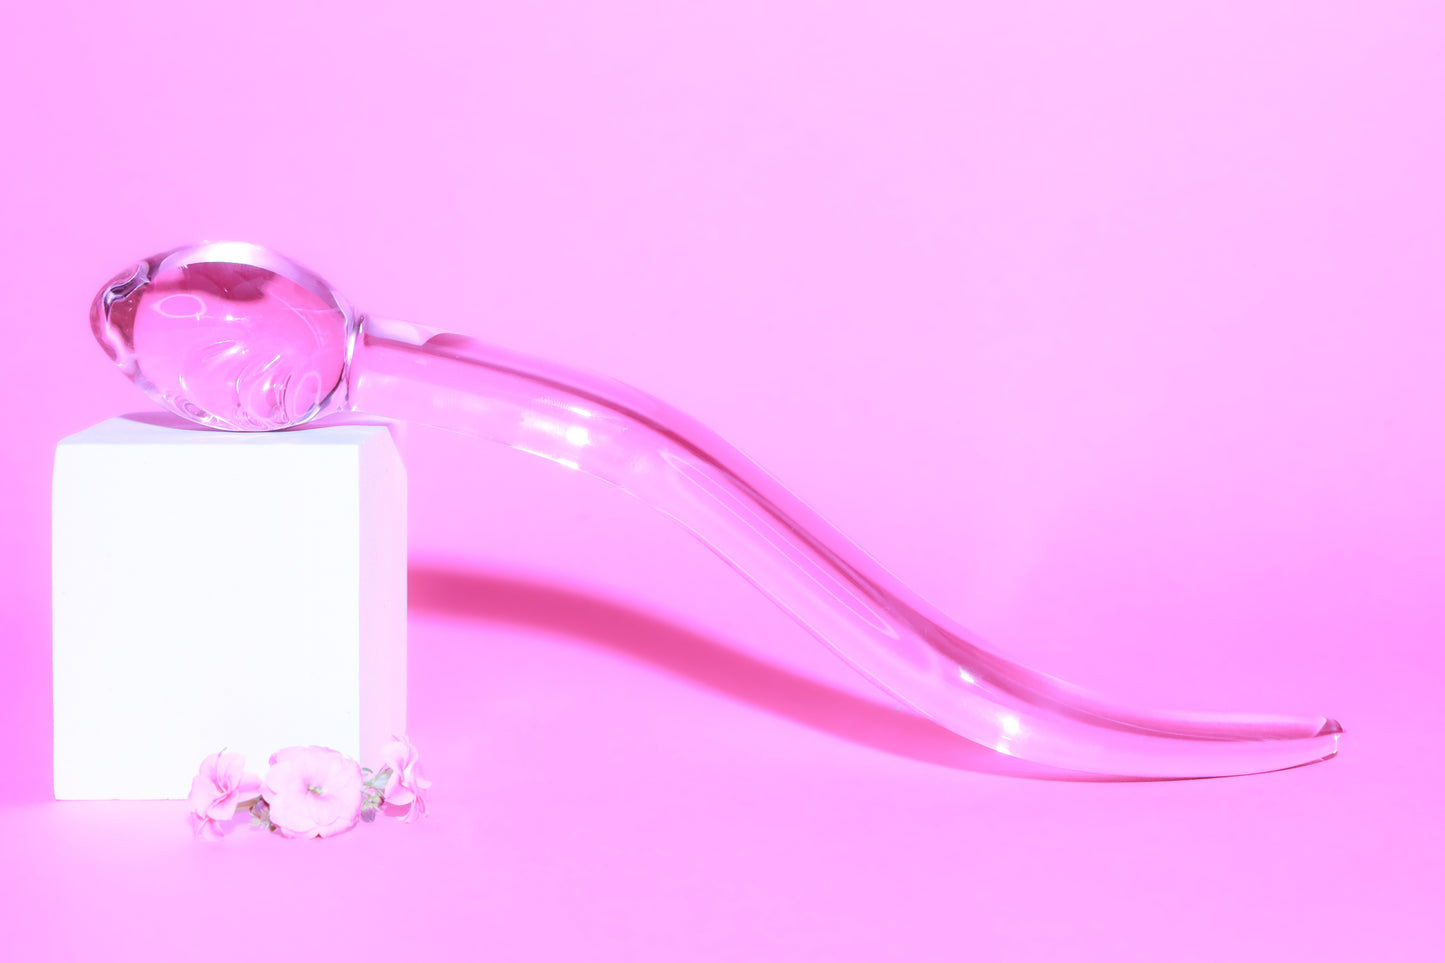 Calypso Cervix stav™ 2.0 Glasdildo - Pink Candy Floss (Limited Edition)